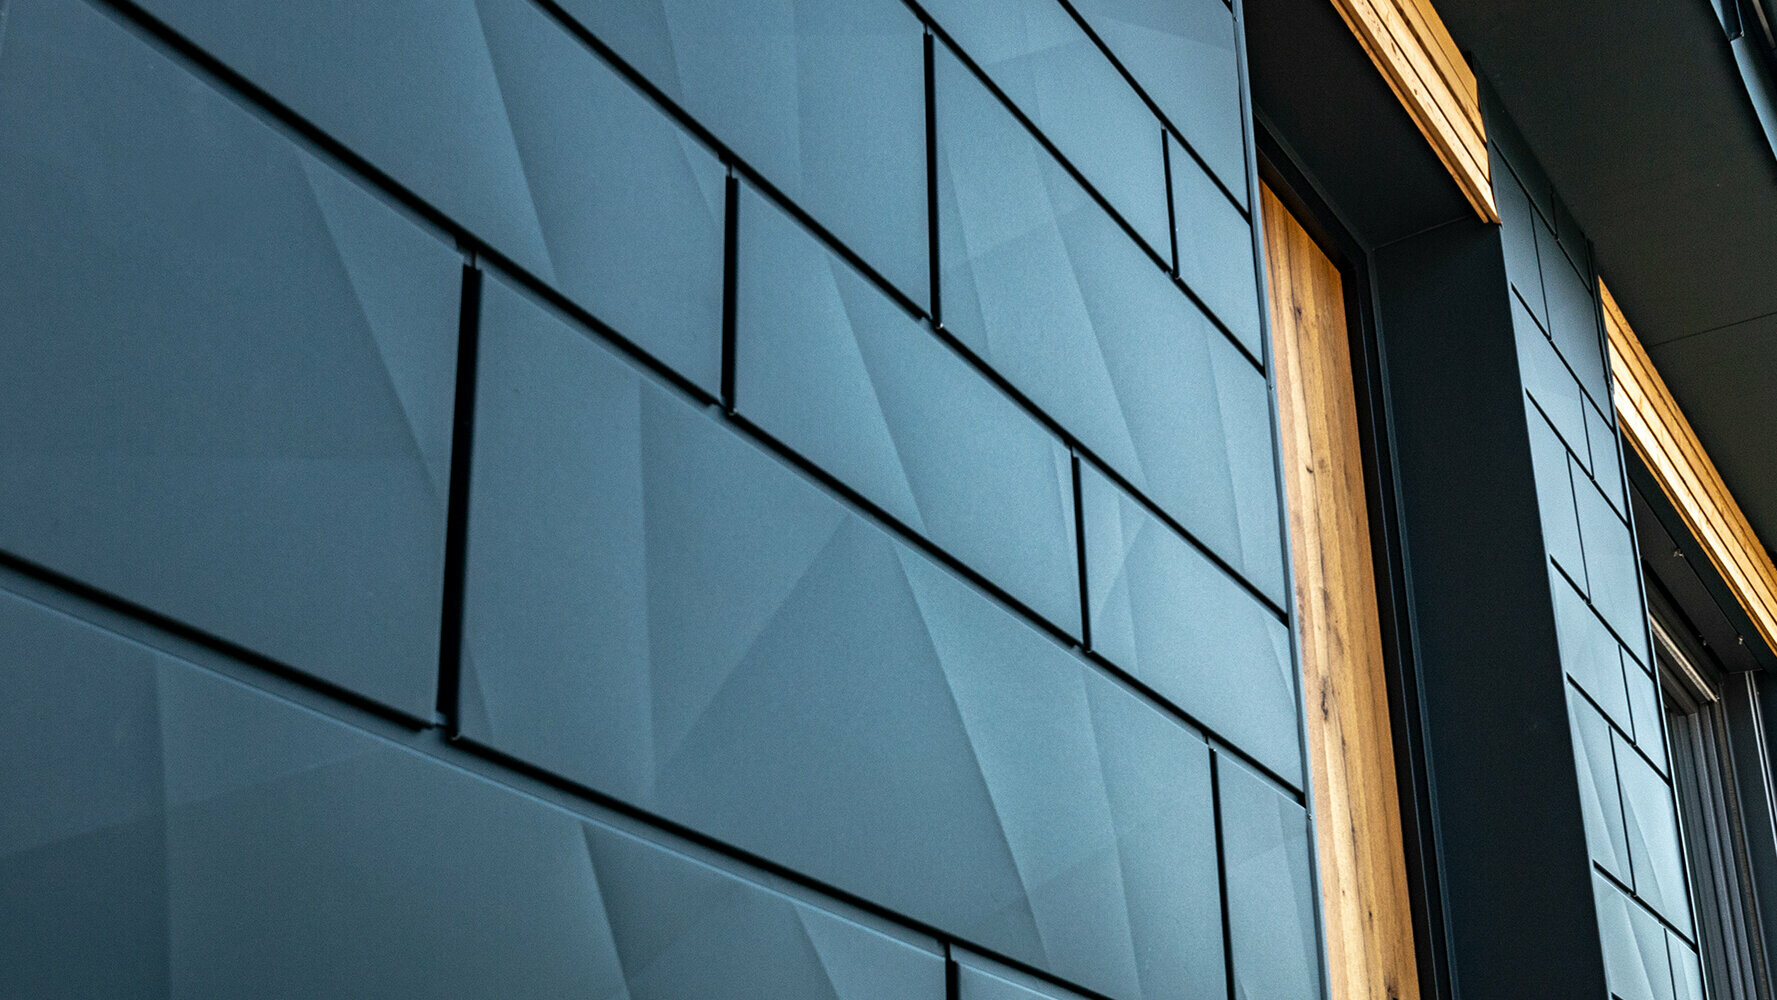 Fasádne panely PREFA s prelamovaným vzhľadom; hliníkový panel PREFA Siding.X v antracitovej farbe v kombinácii s drevenou fasádou.